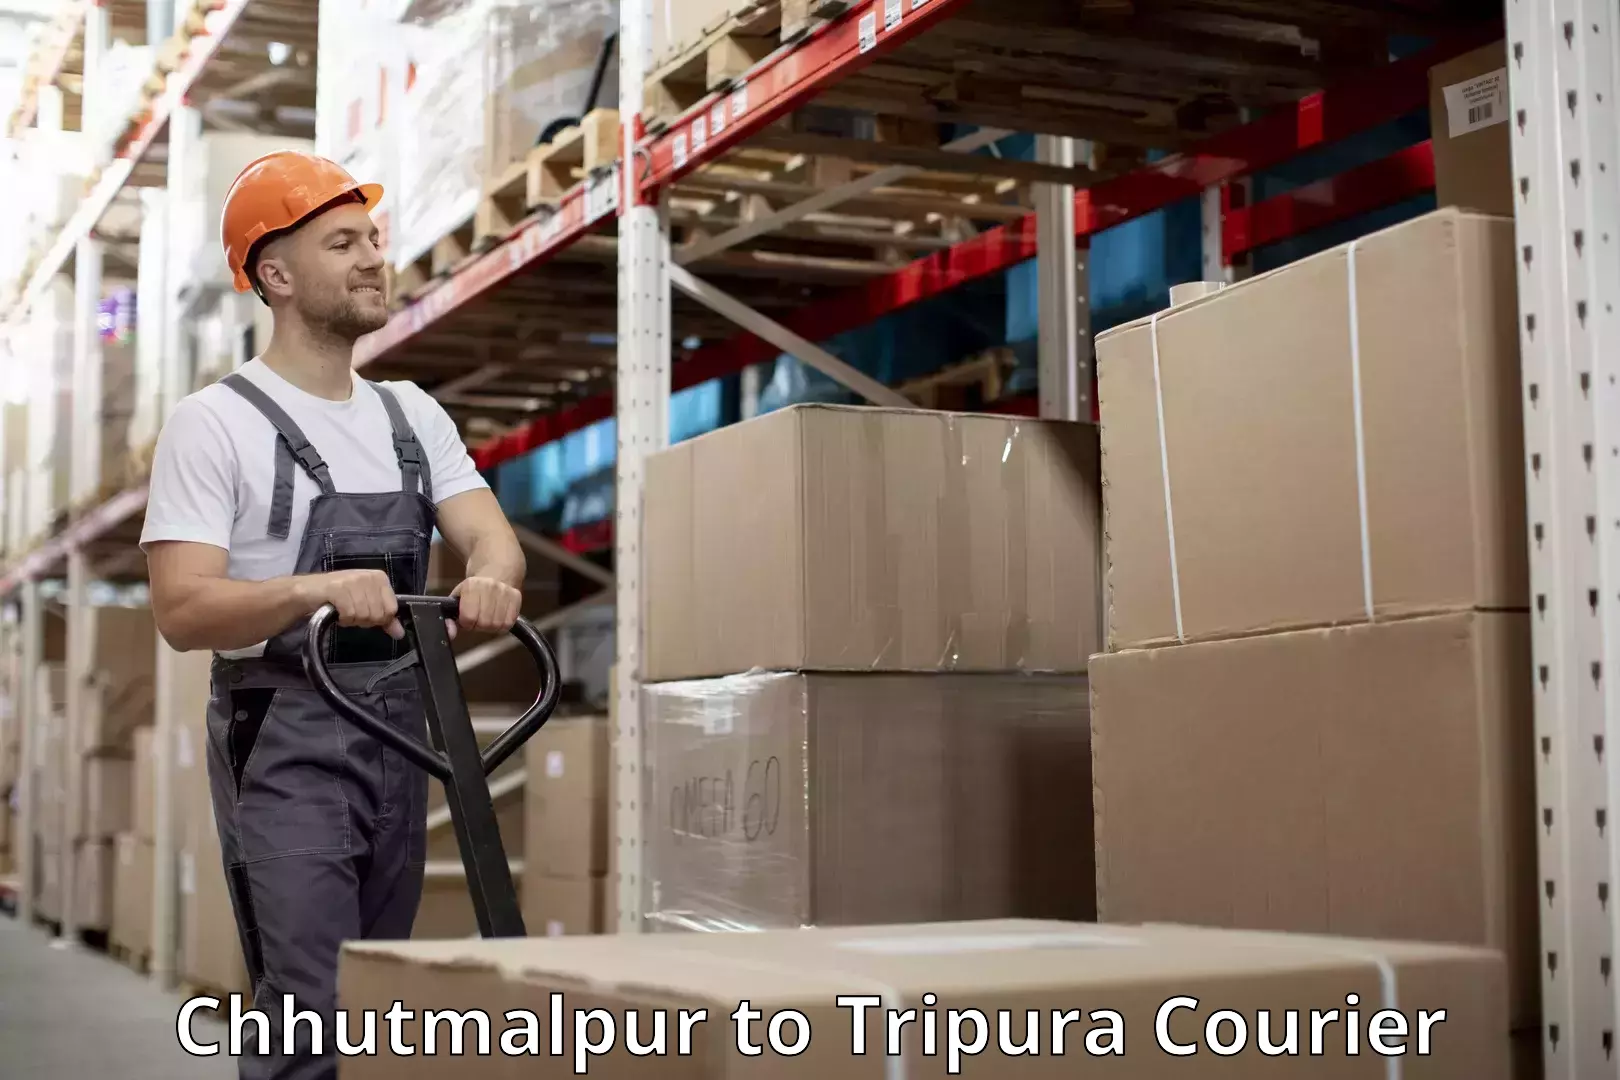 Door-to-door baggage service Chhutmalpur to Tripura